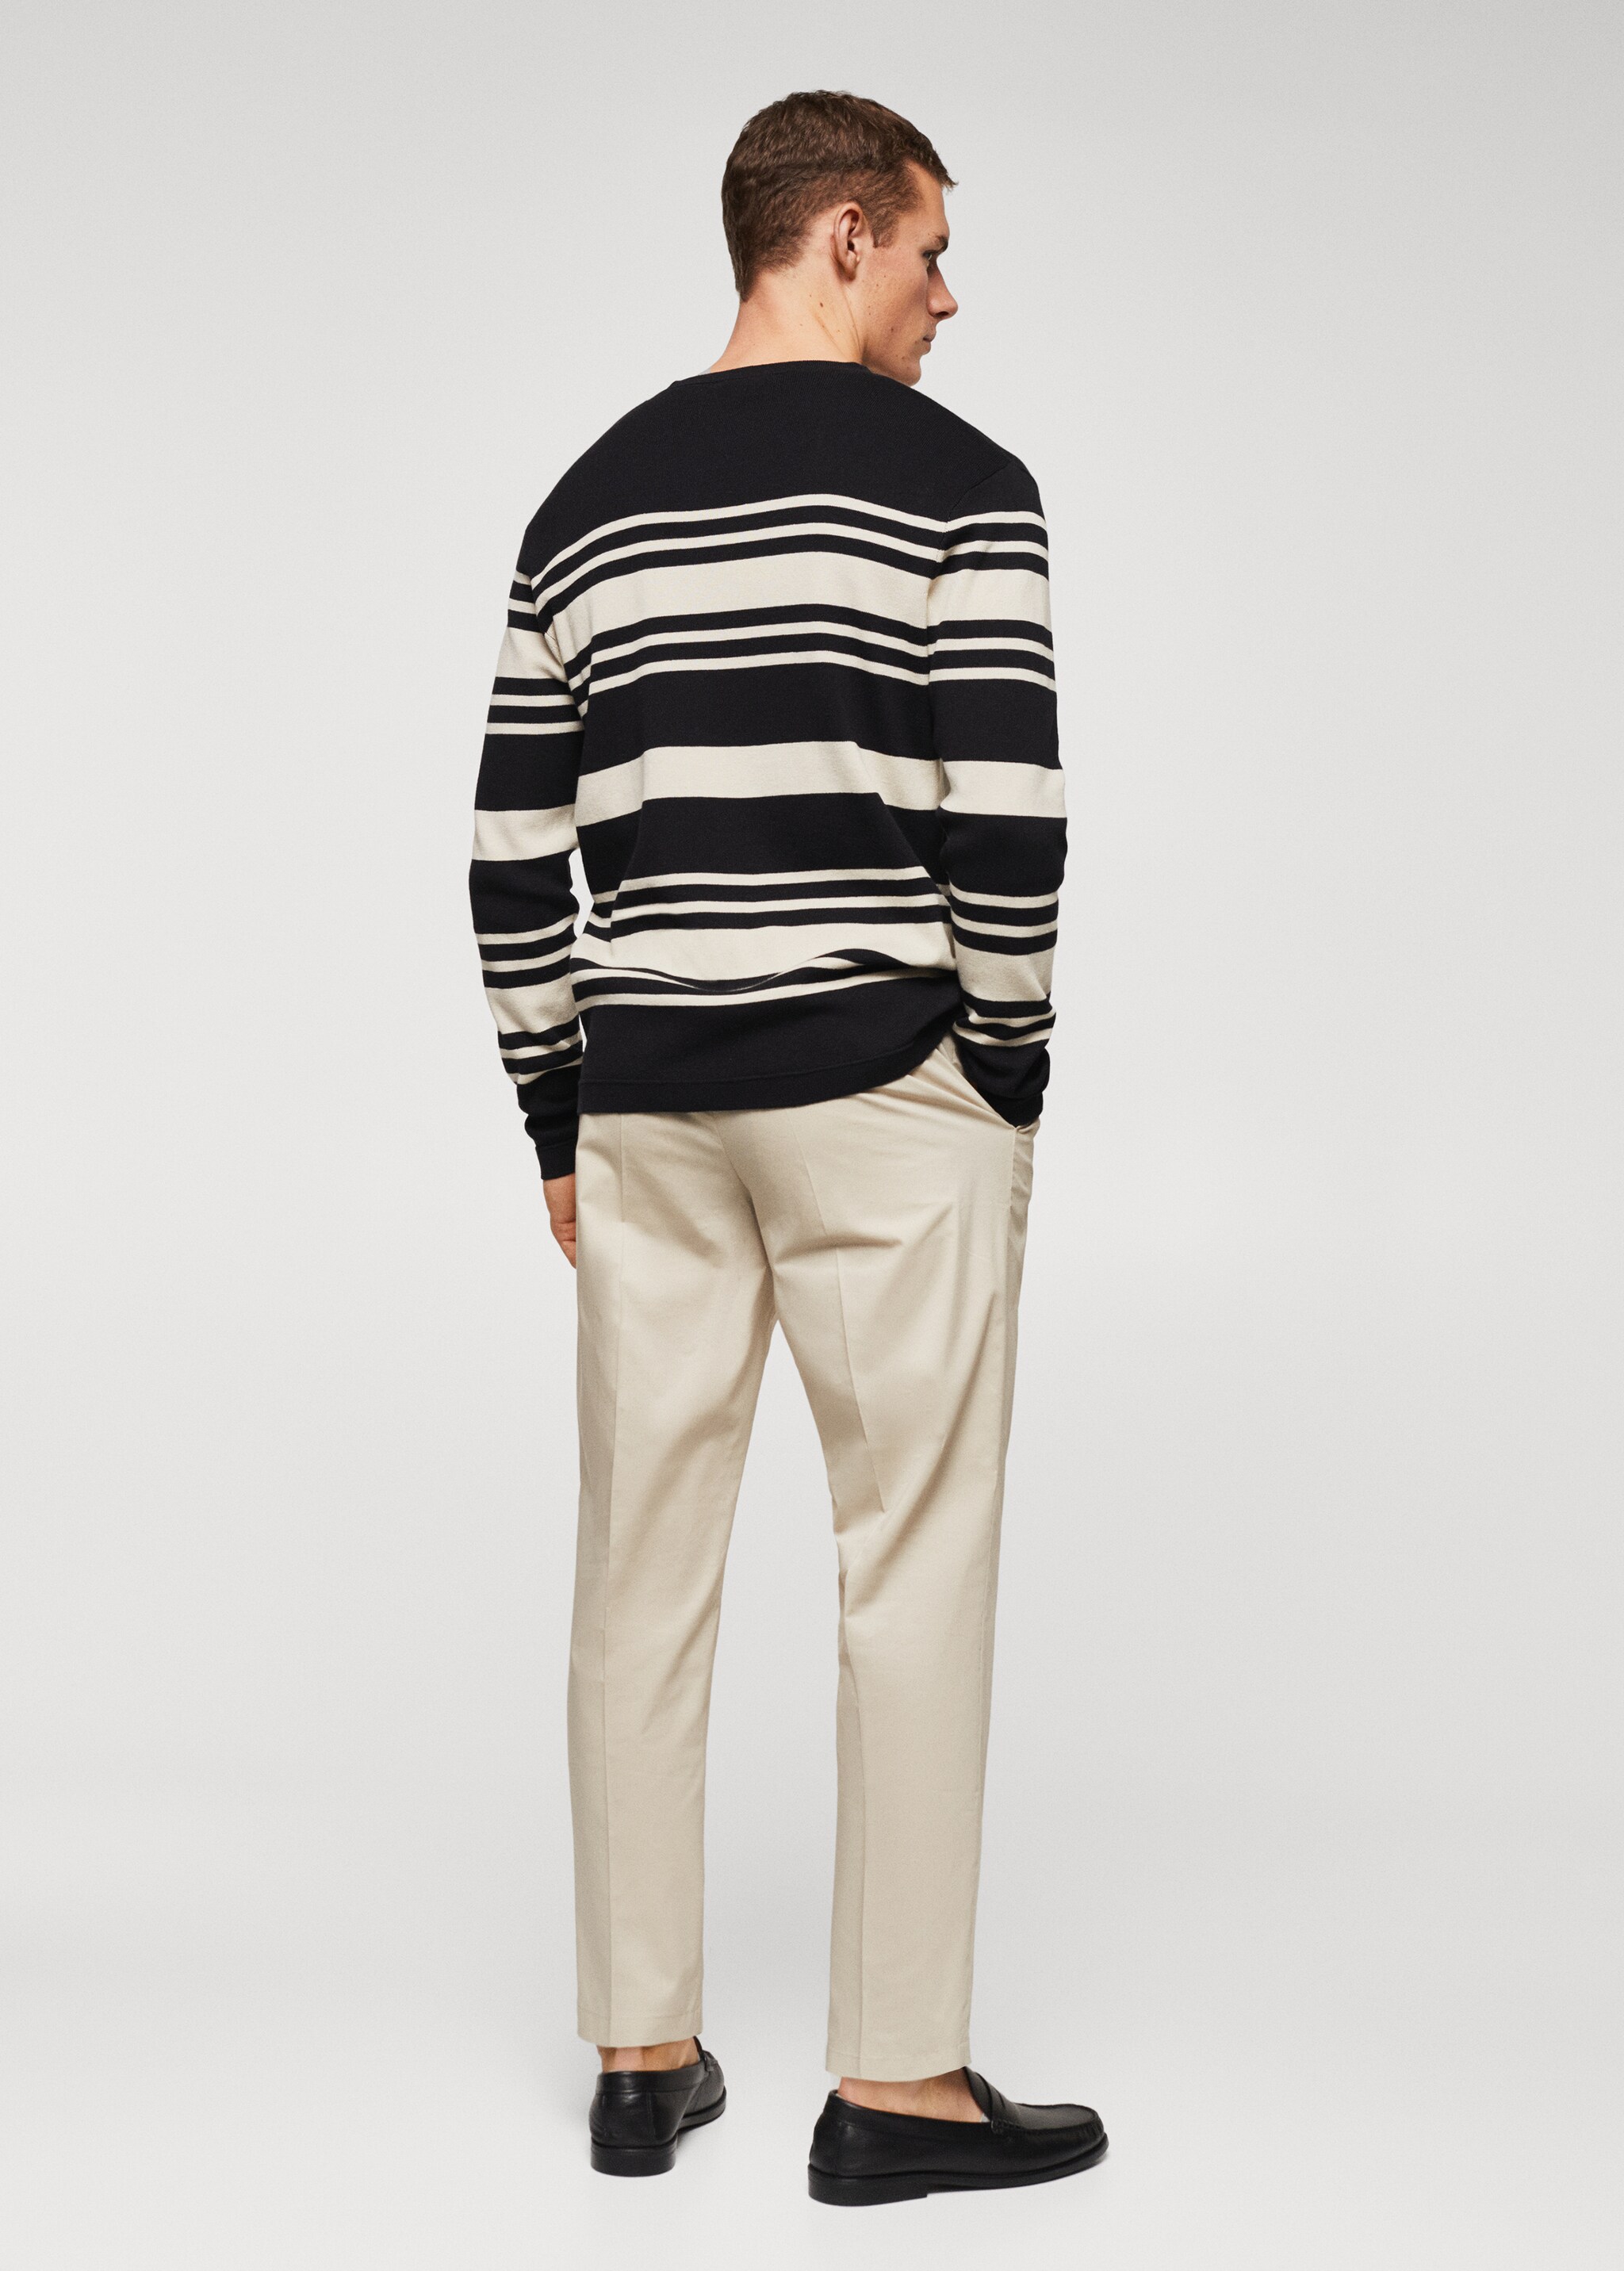 Striped cotton sweater - Spatele articolului